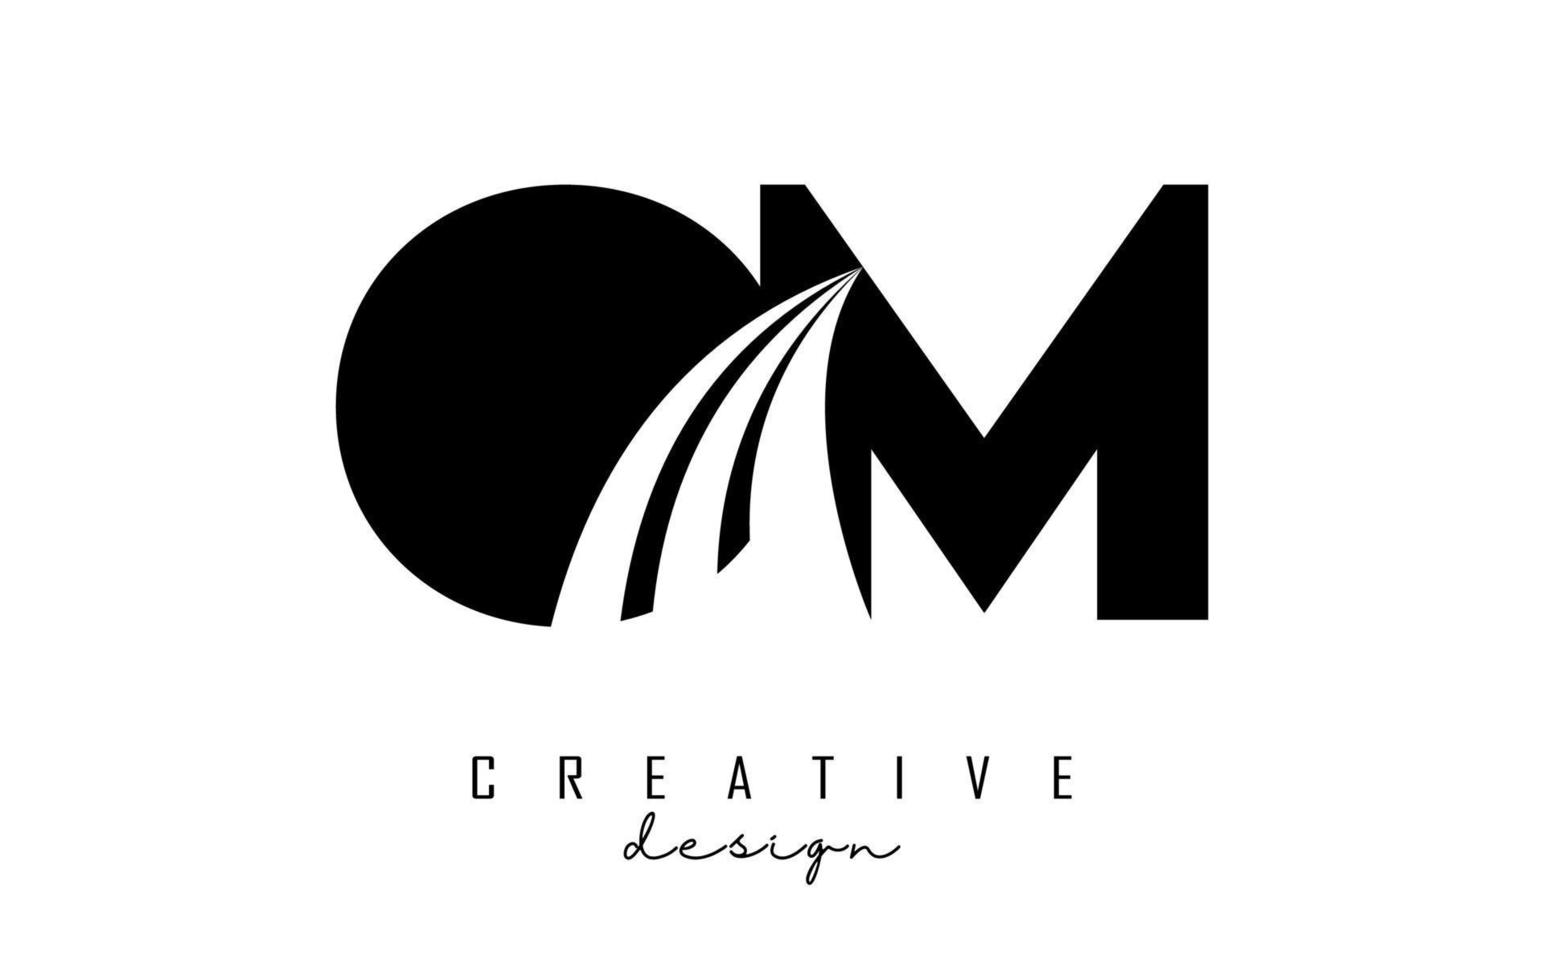 Logotipo creativo de letras negras om om con líneas principales y diseño de concepto de carretera. letras con diseño geométrico. vector